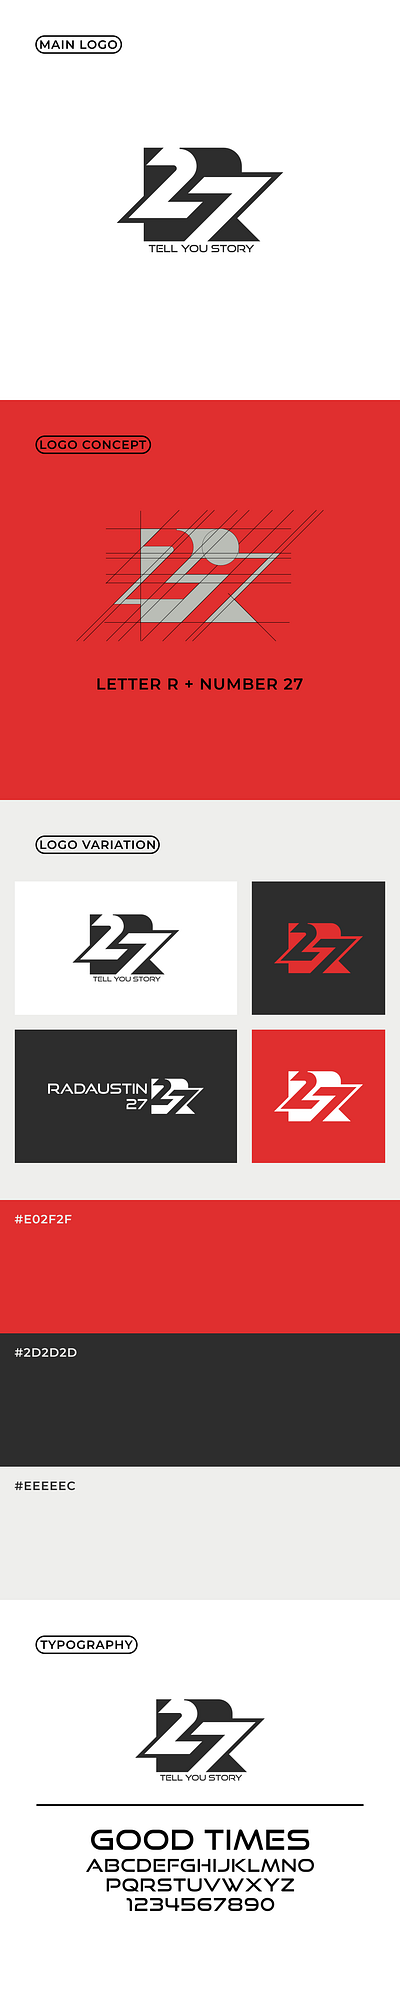 RADAUSTIN 27 LOGO DESIGN branding gaming logo modern wordmark youtube chanel